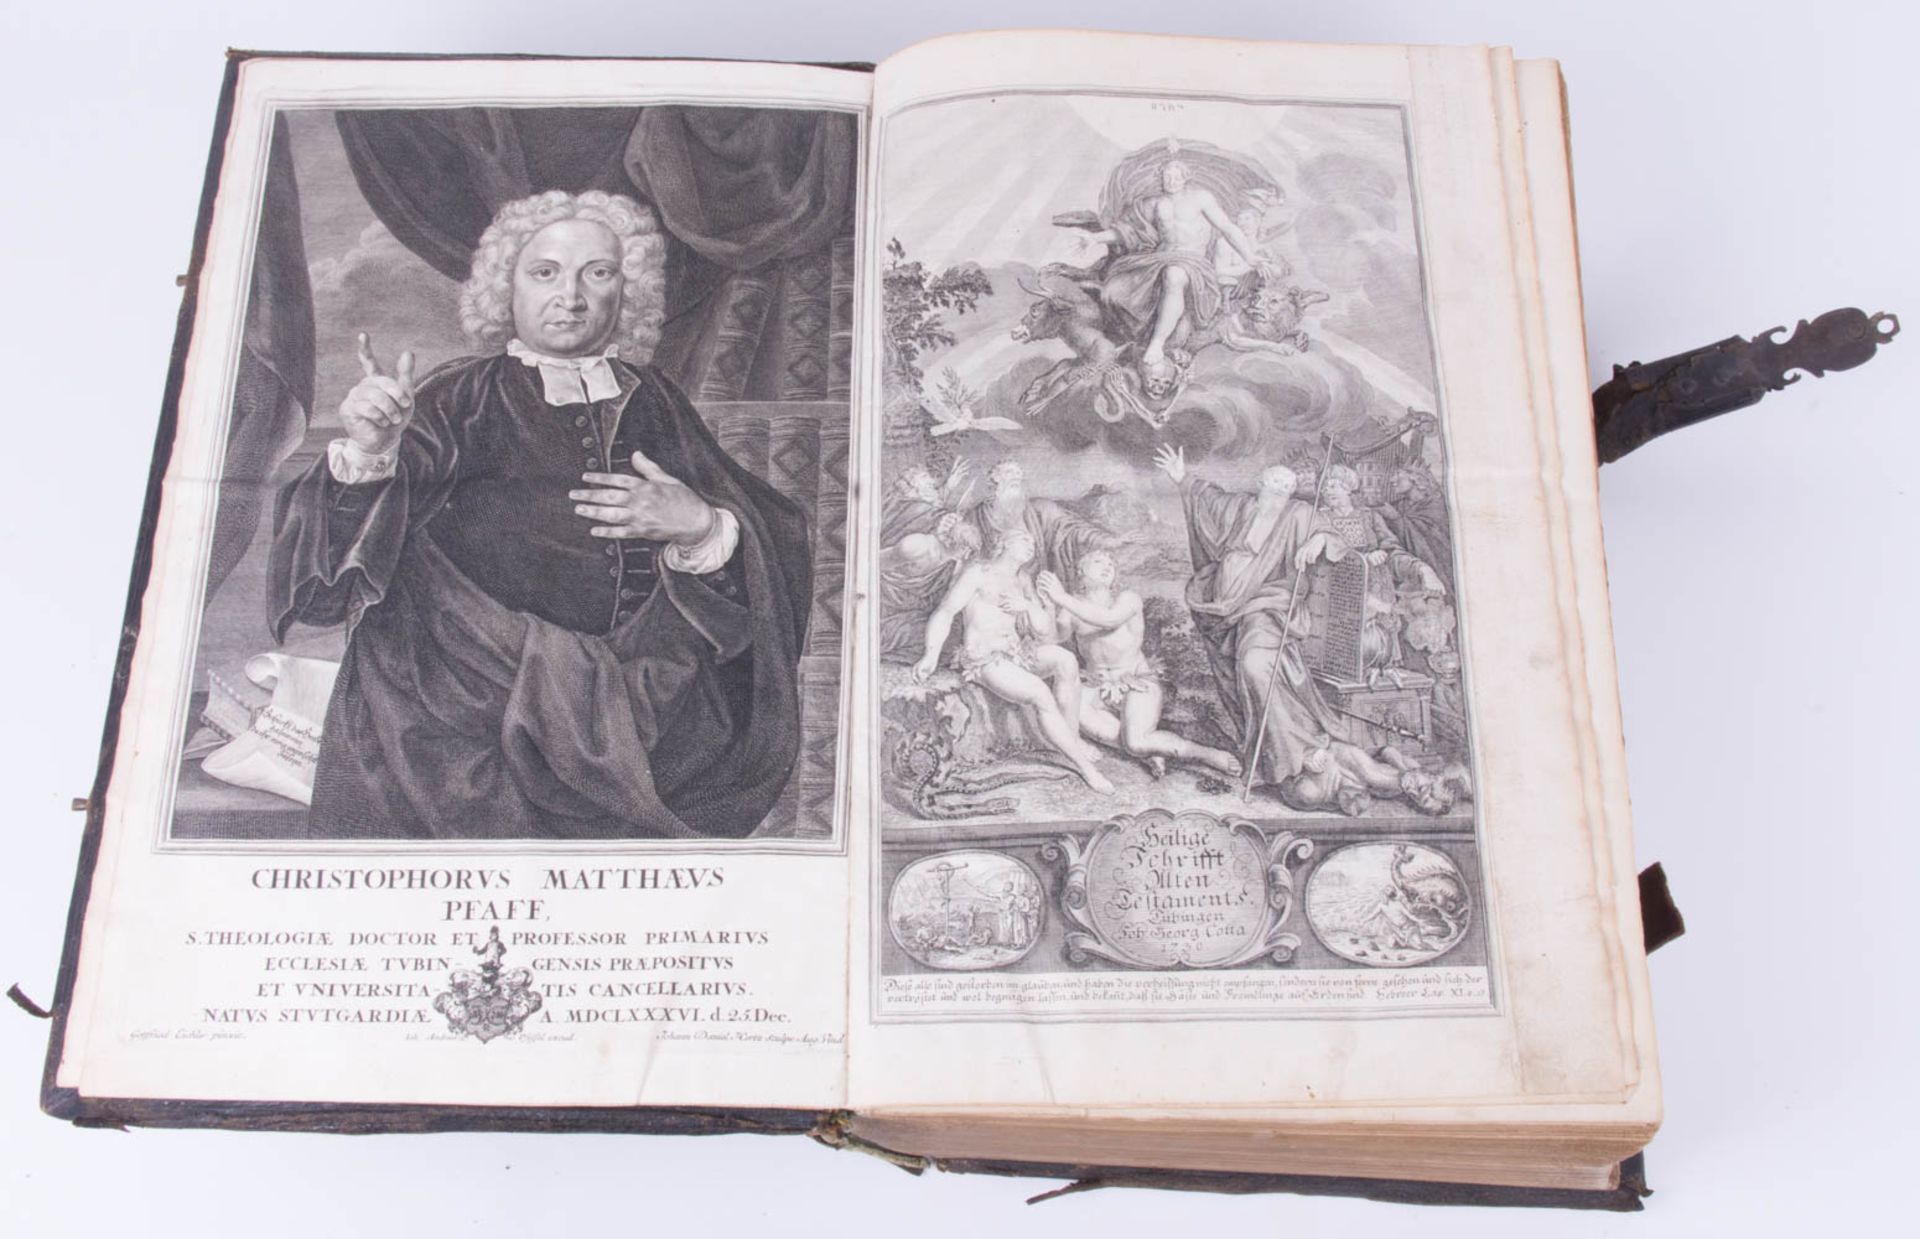 Biblia germanica, Johann Georg und Christian Gottfried Cotta, Tübingen 1730.